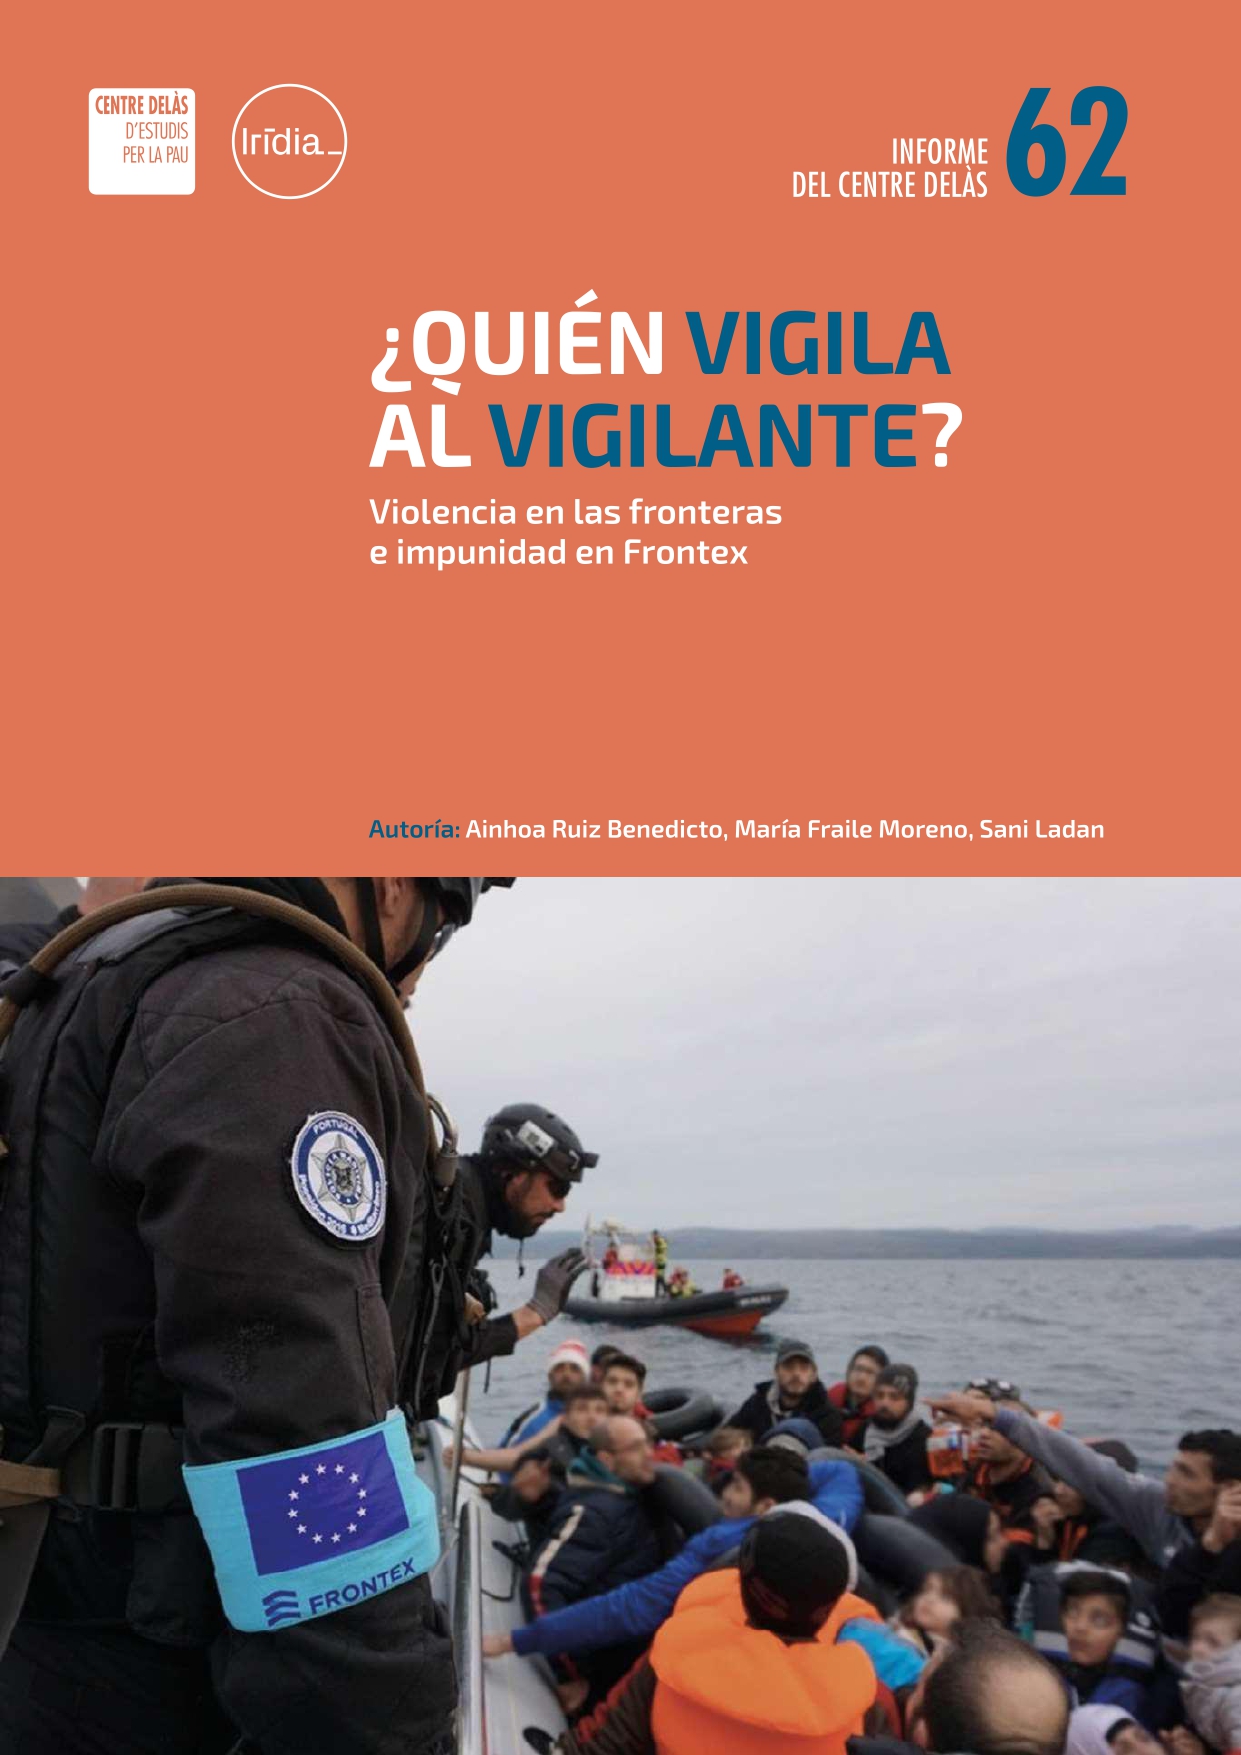 Informe 62 del Centre Delàs con Irídia: «¿Quién vigila al vigilante? Violencia en las fronteras e impunidad en Frontex»